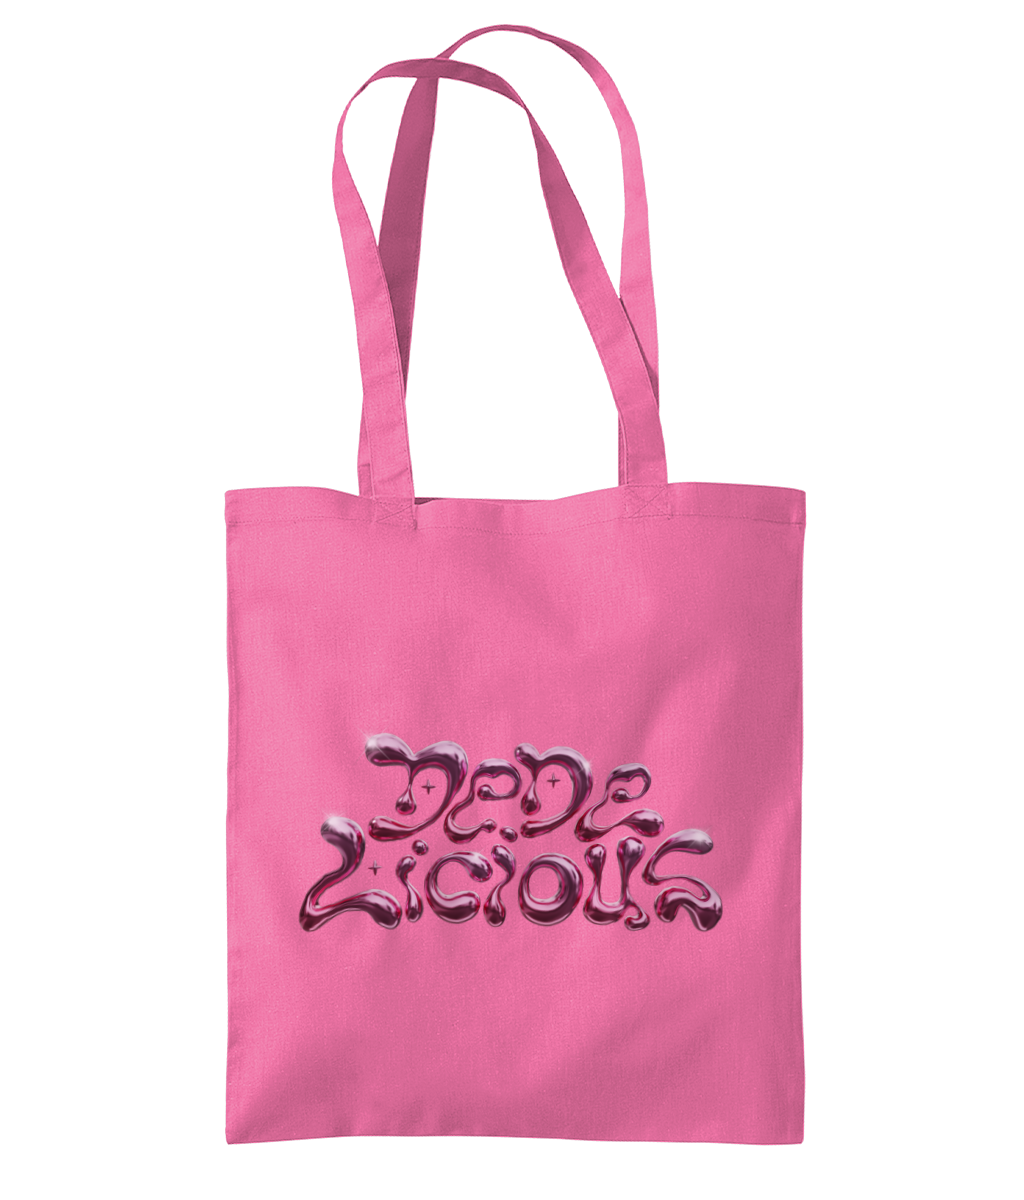 DeDe Licious Logo Tote Bag